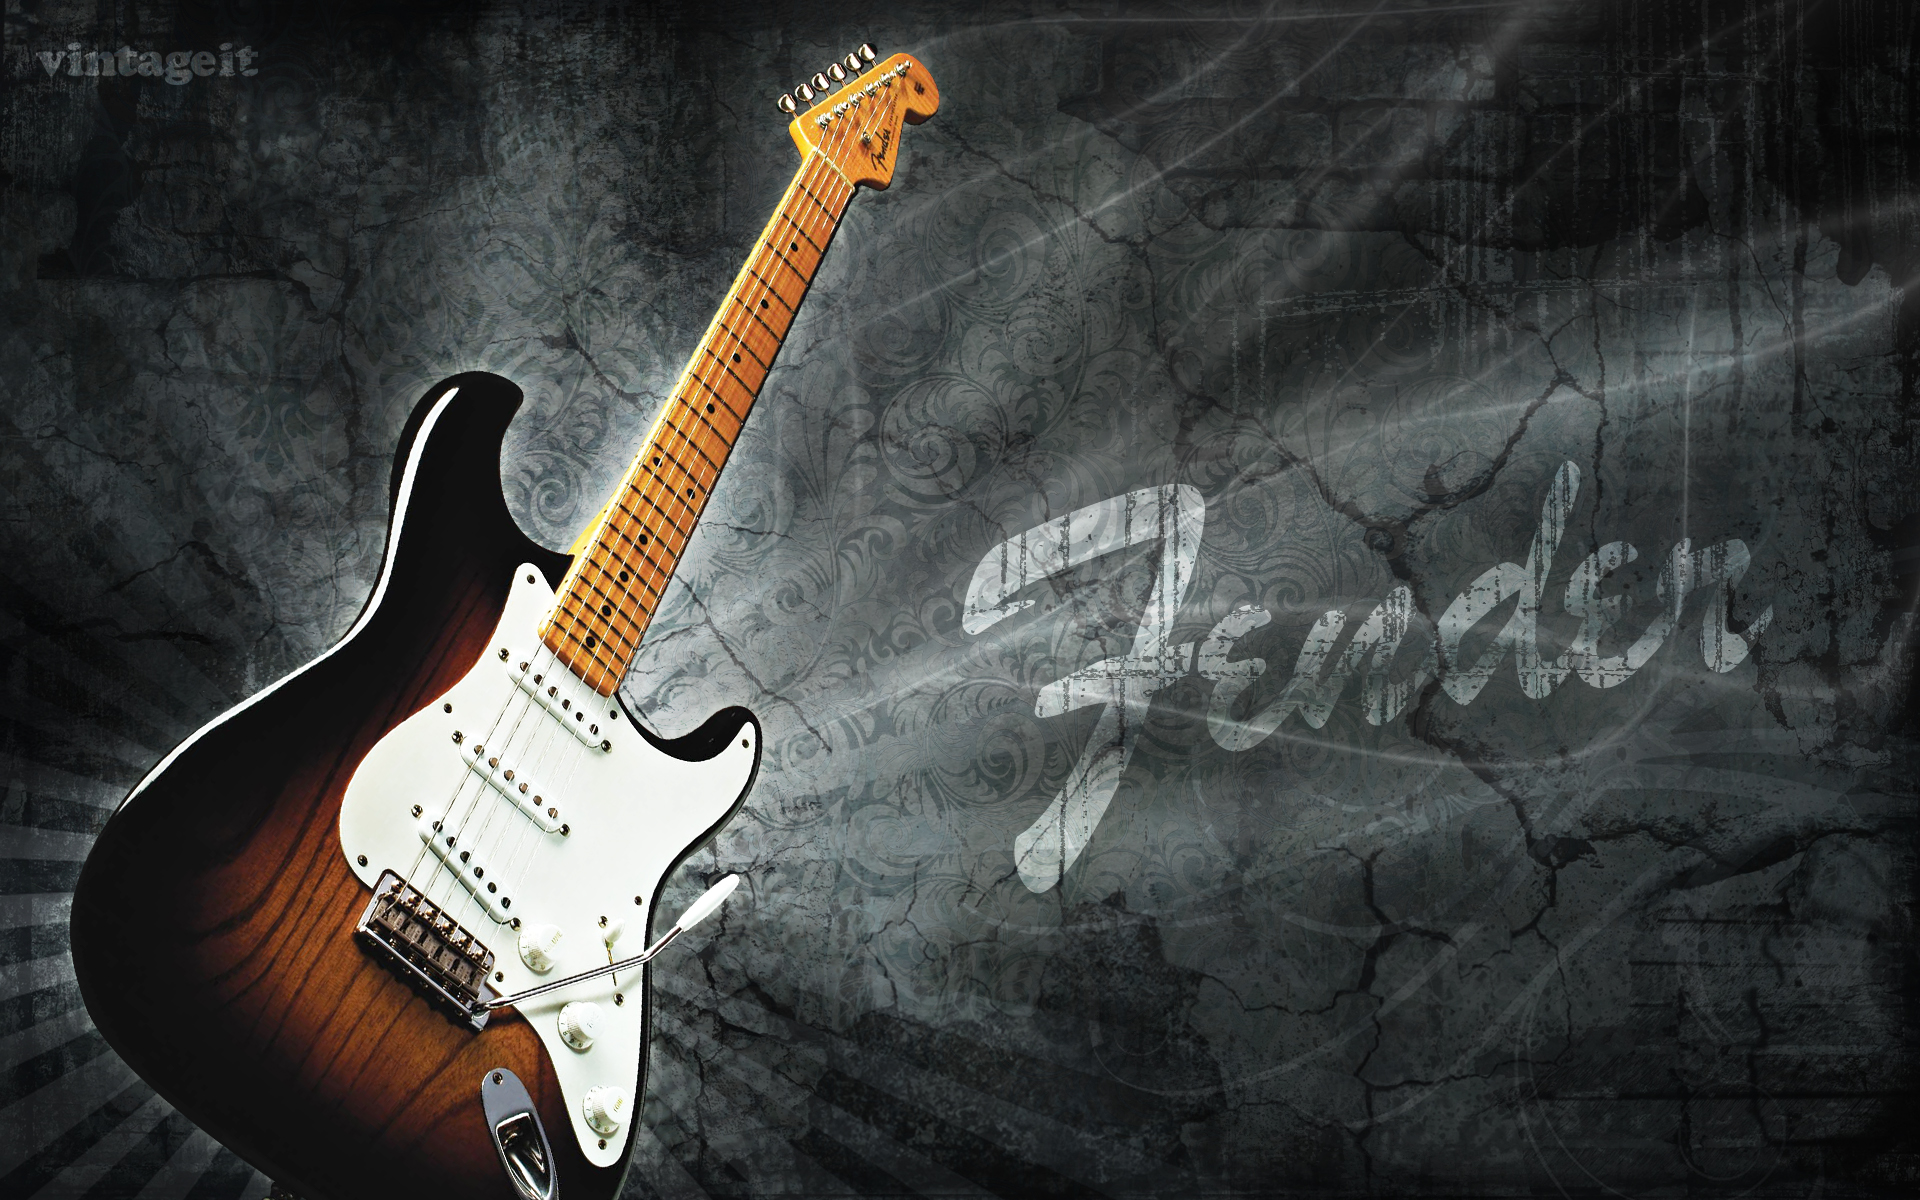 Fender Stratocaster Wallpaper HD On